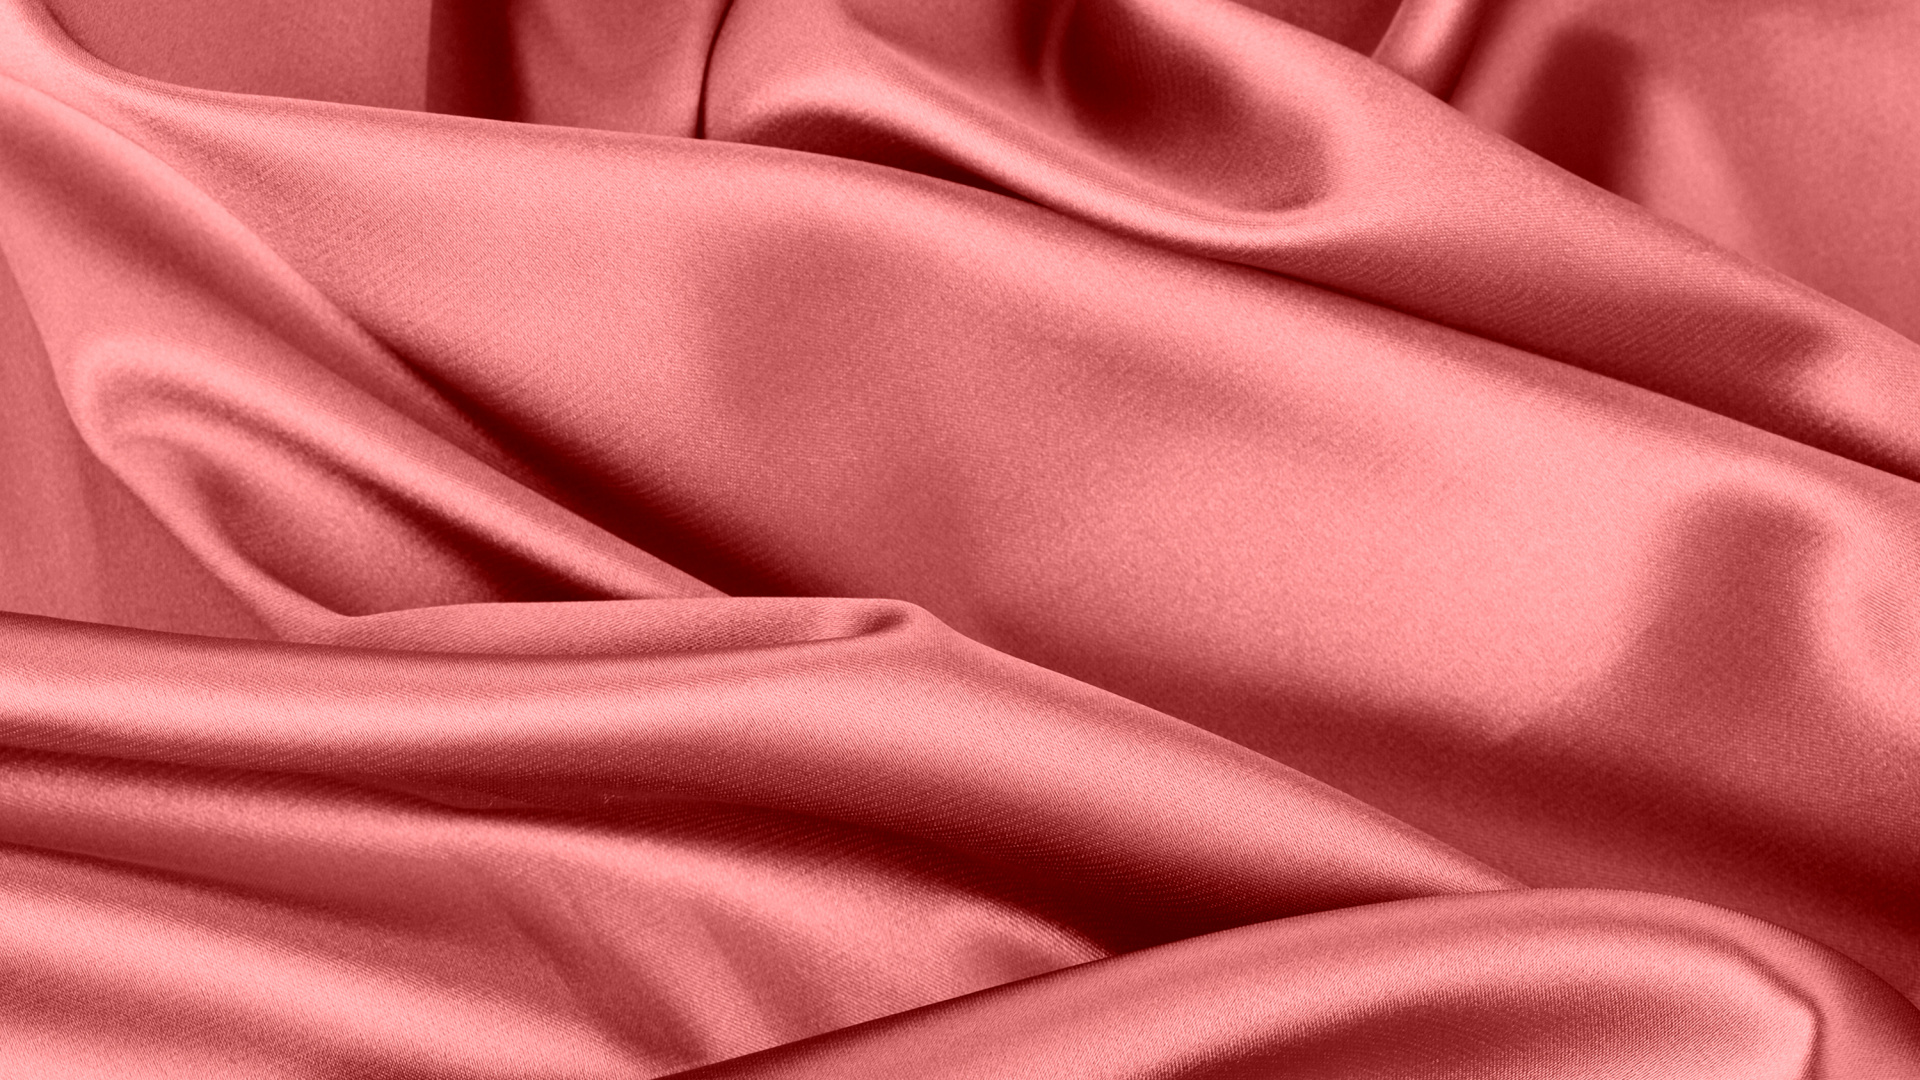 颜色, 缎面, 丝绸, 粉红色, 红色的 壁纸 1920x1080 允许